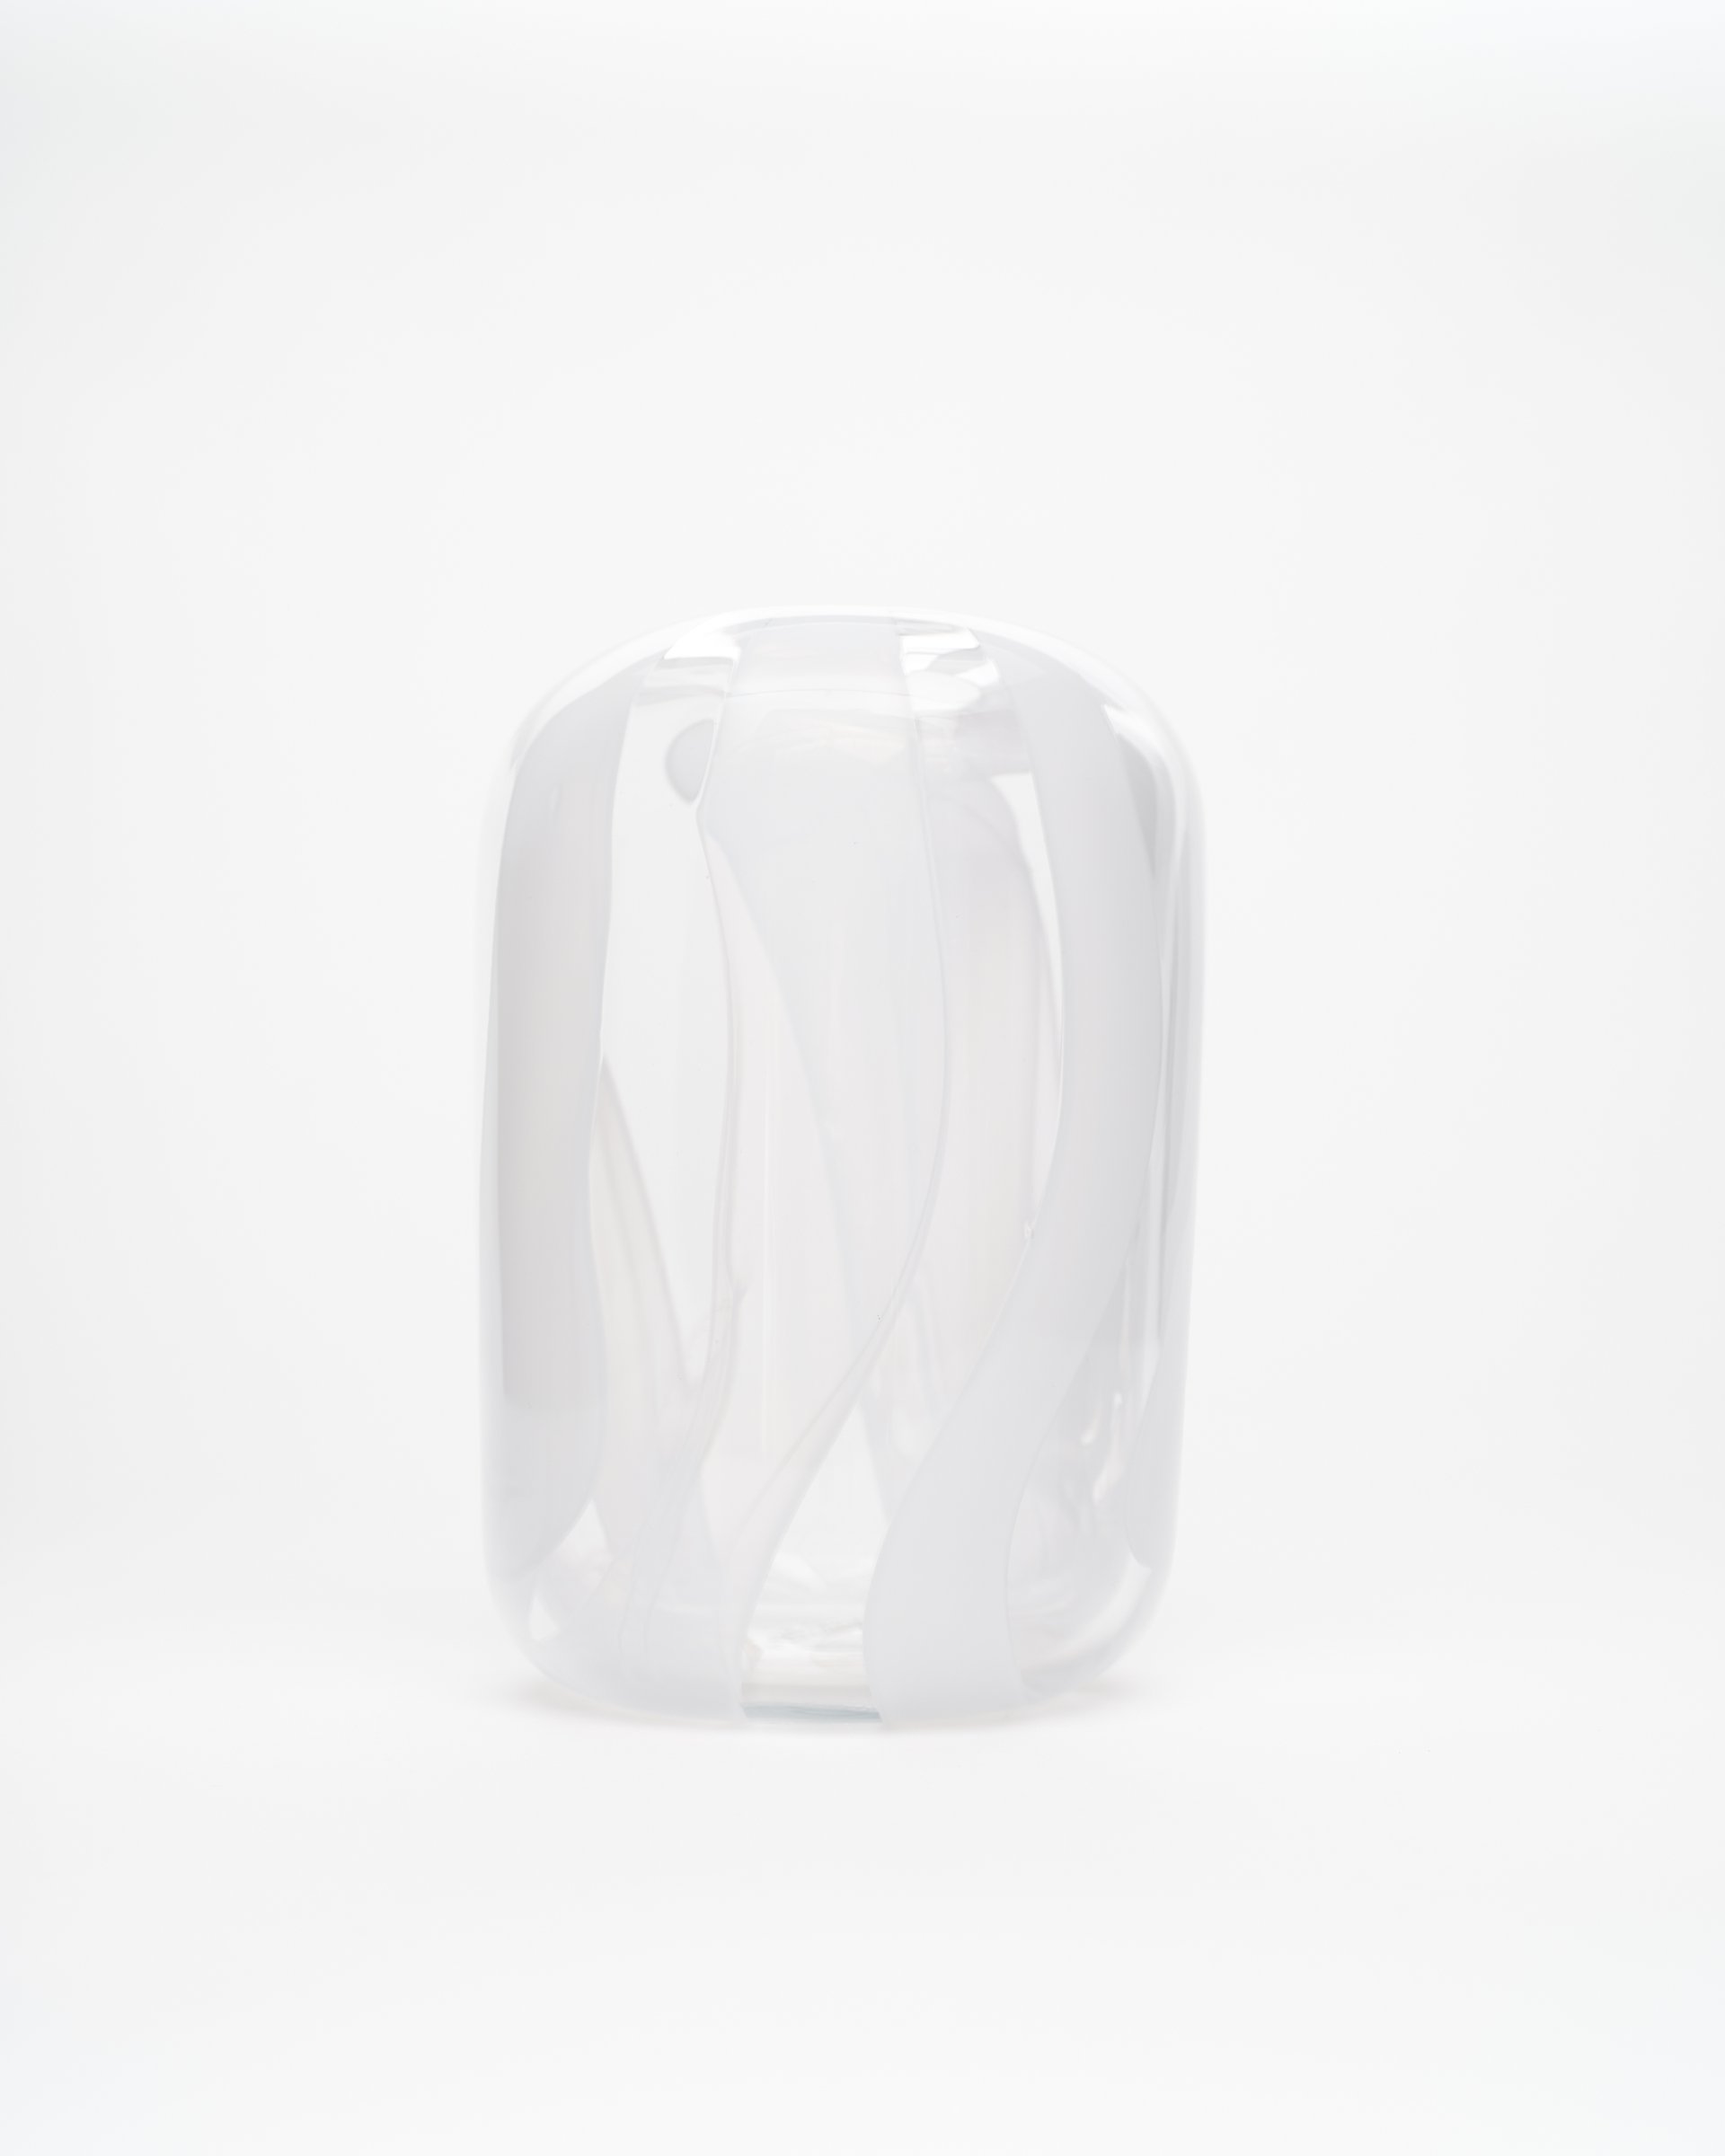 White Vase 4